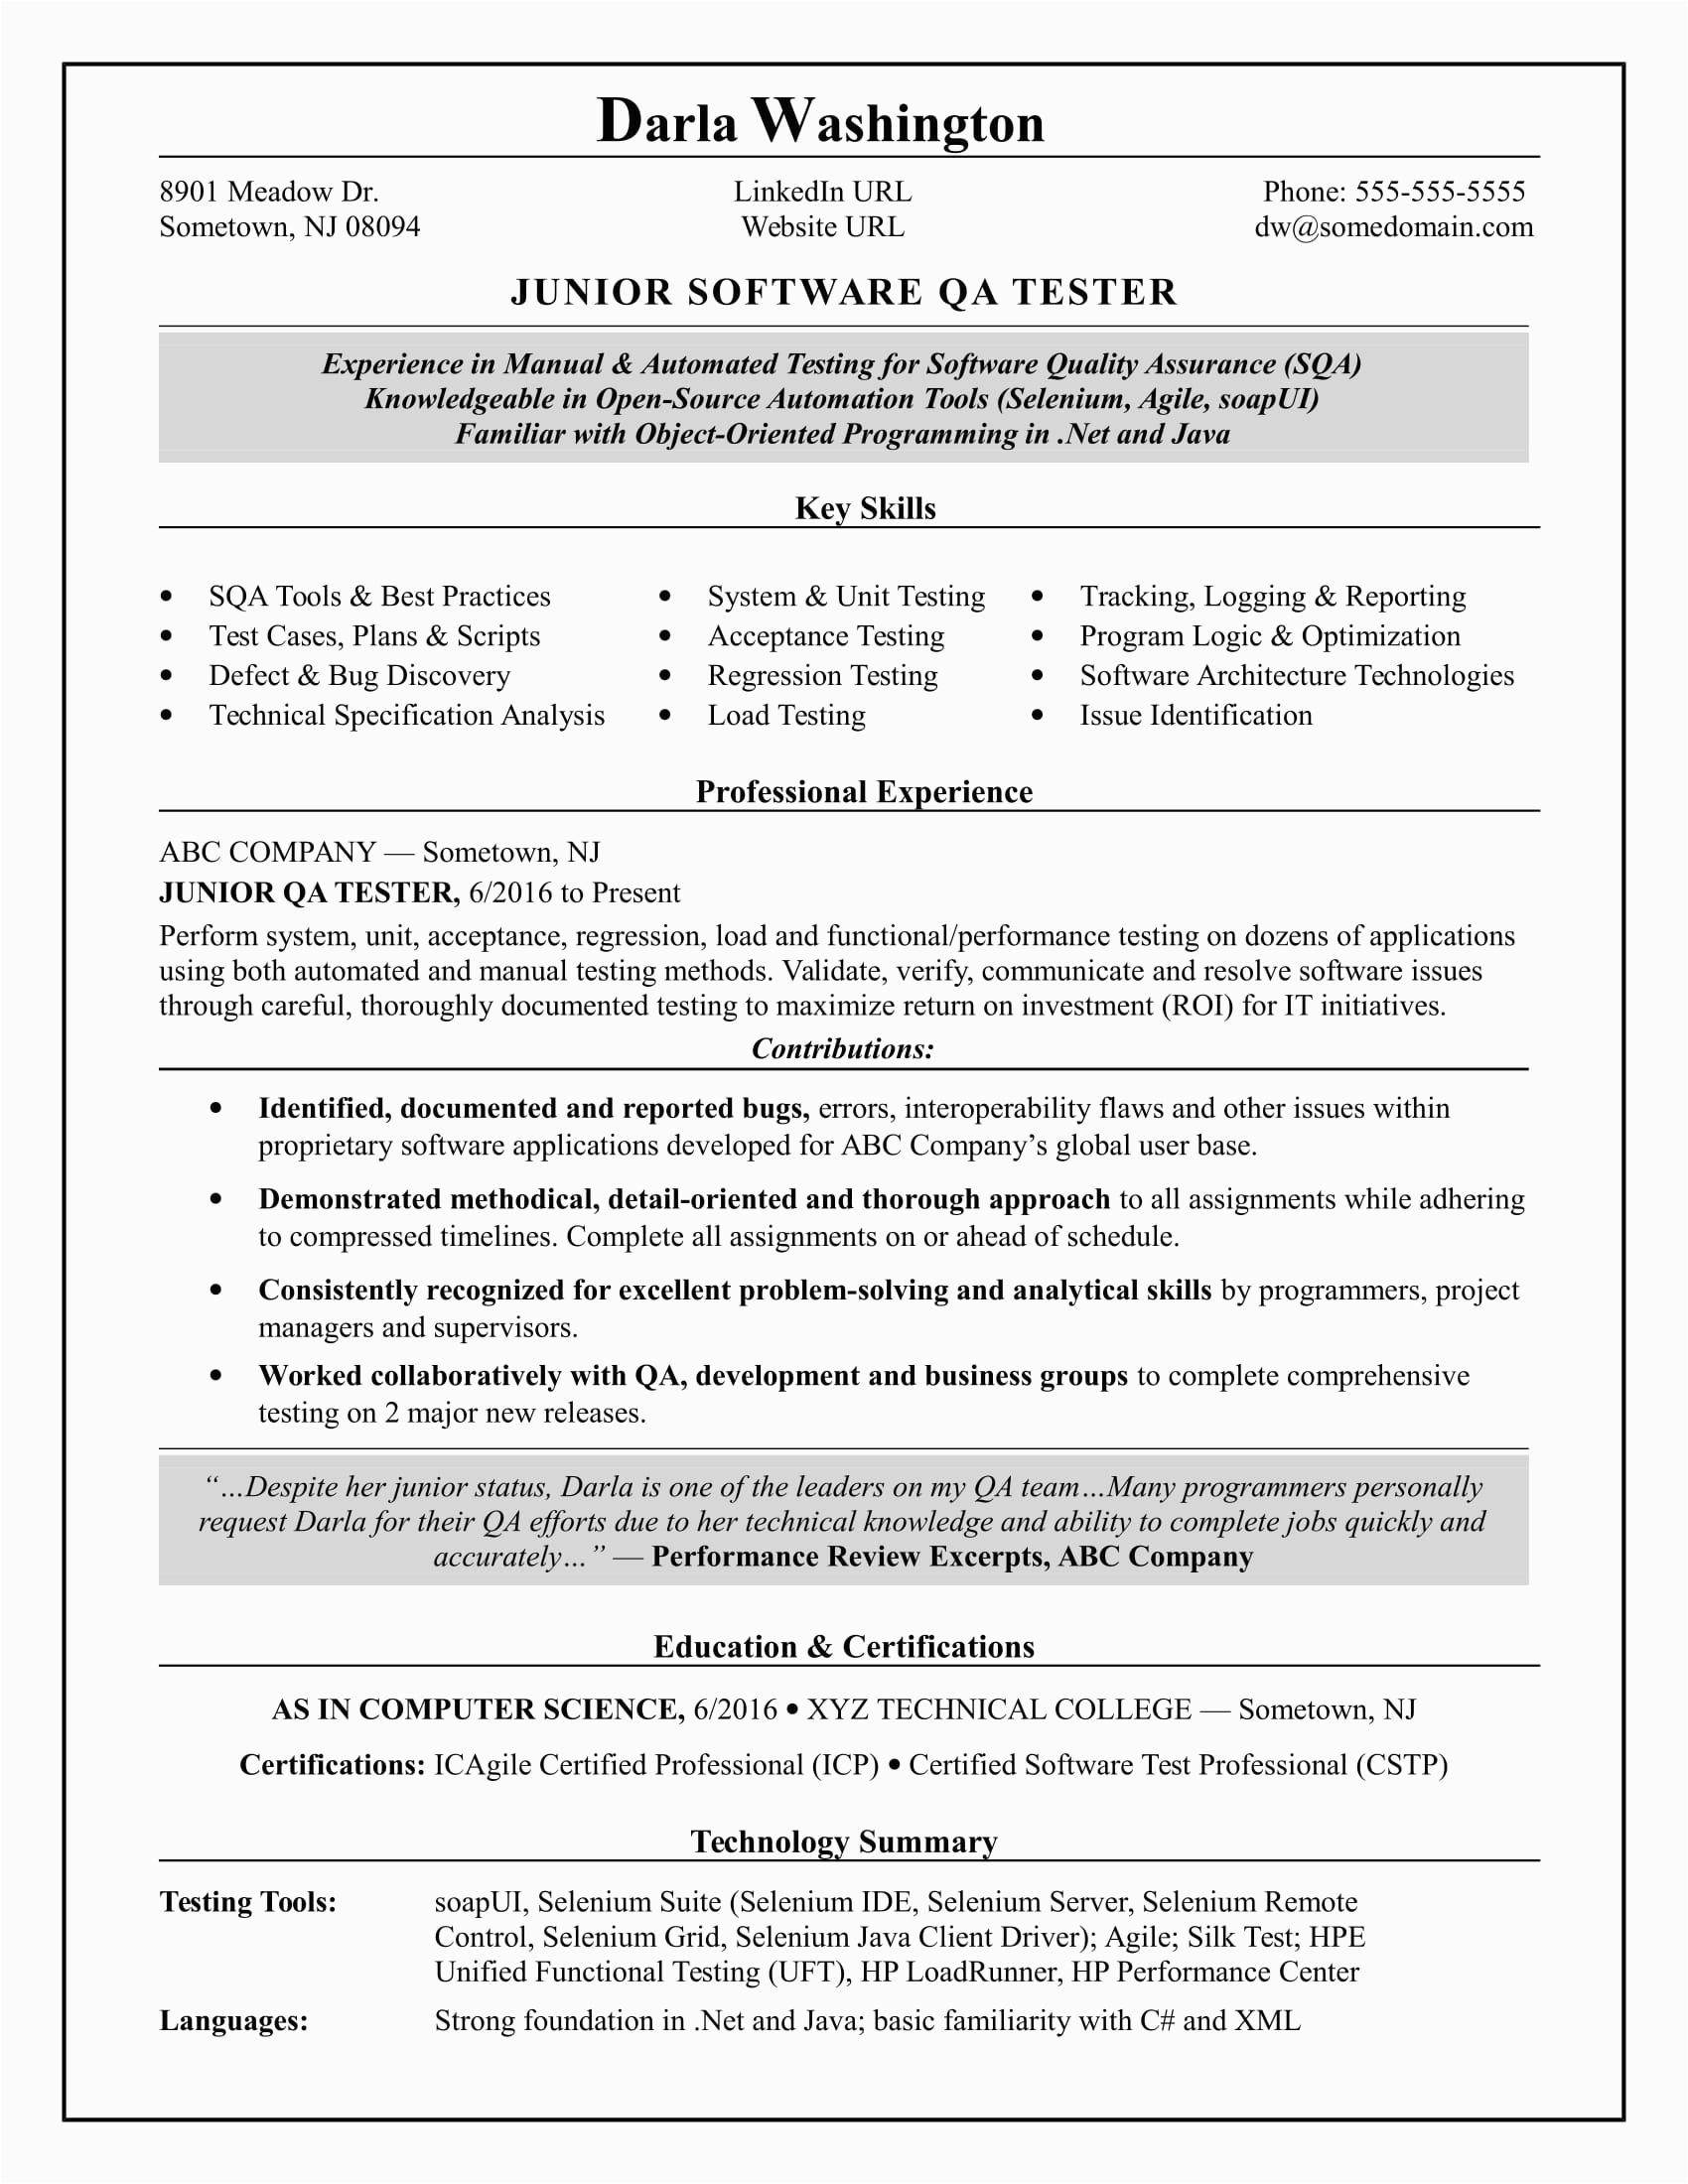 Sample Resume for Qa Tester Entry Level Entry Level Qa software Tester Resume Sample